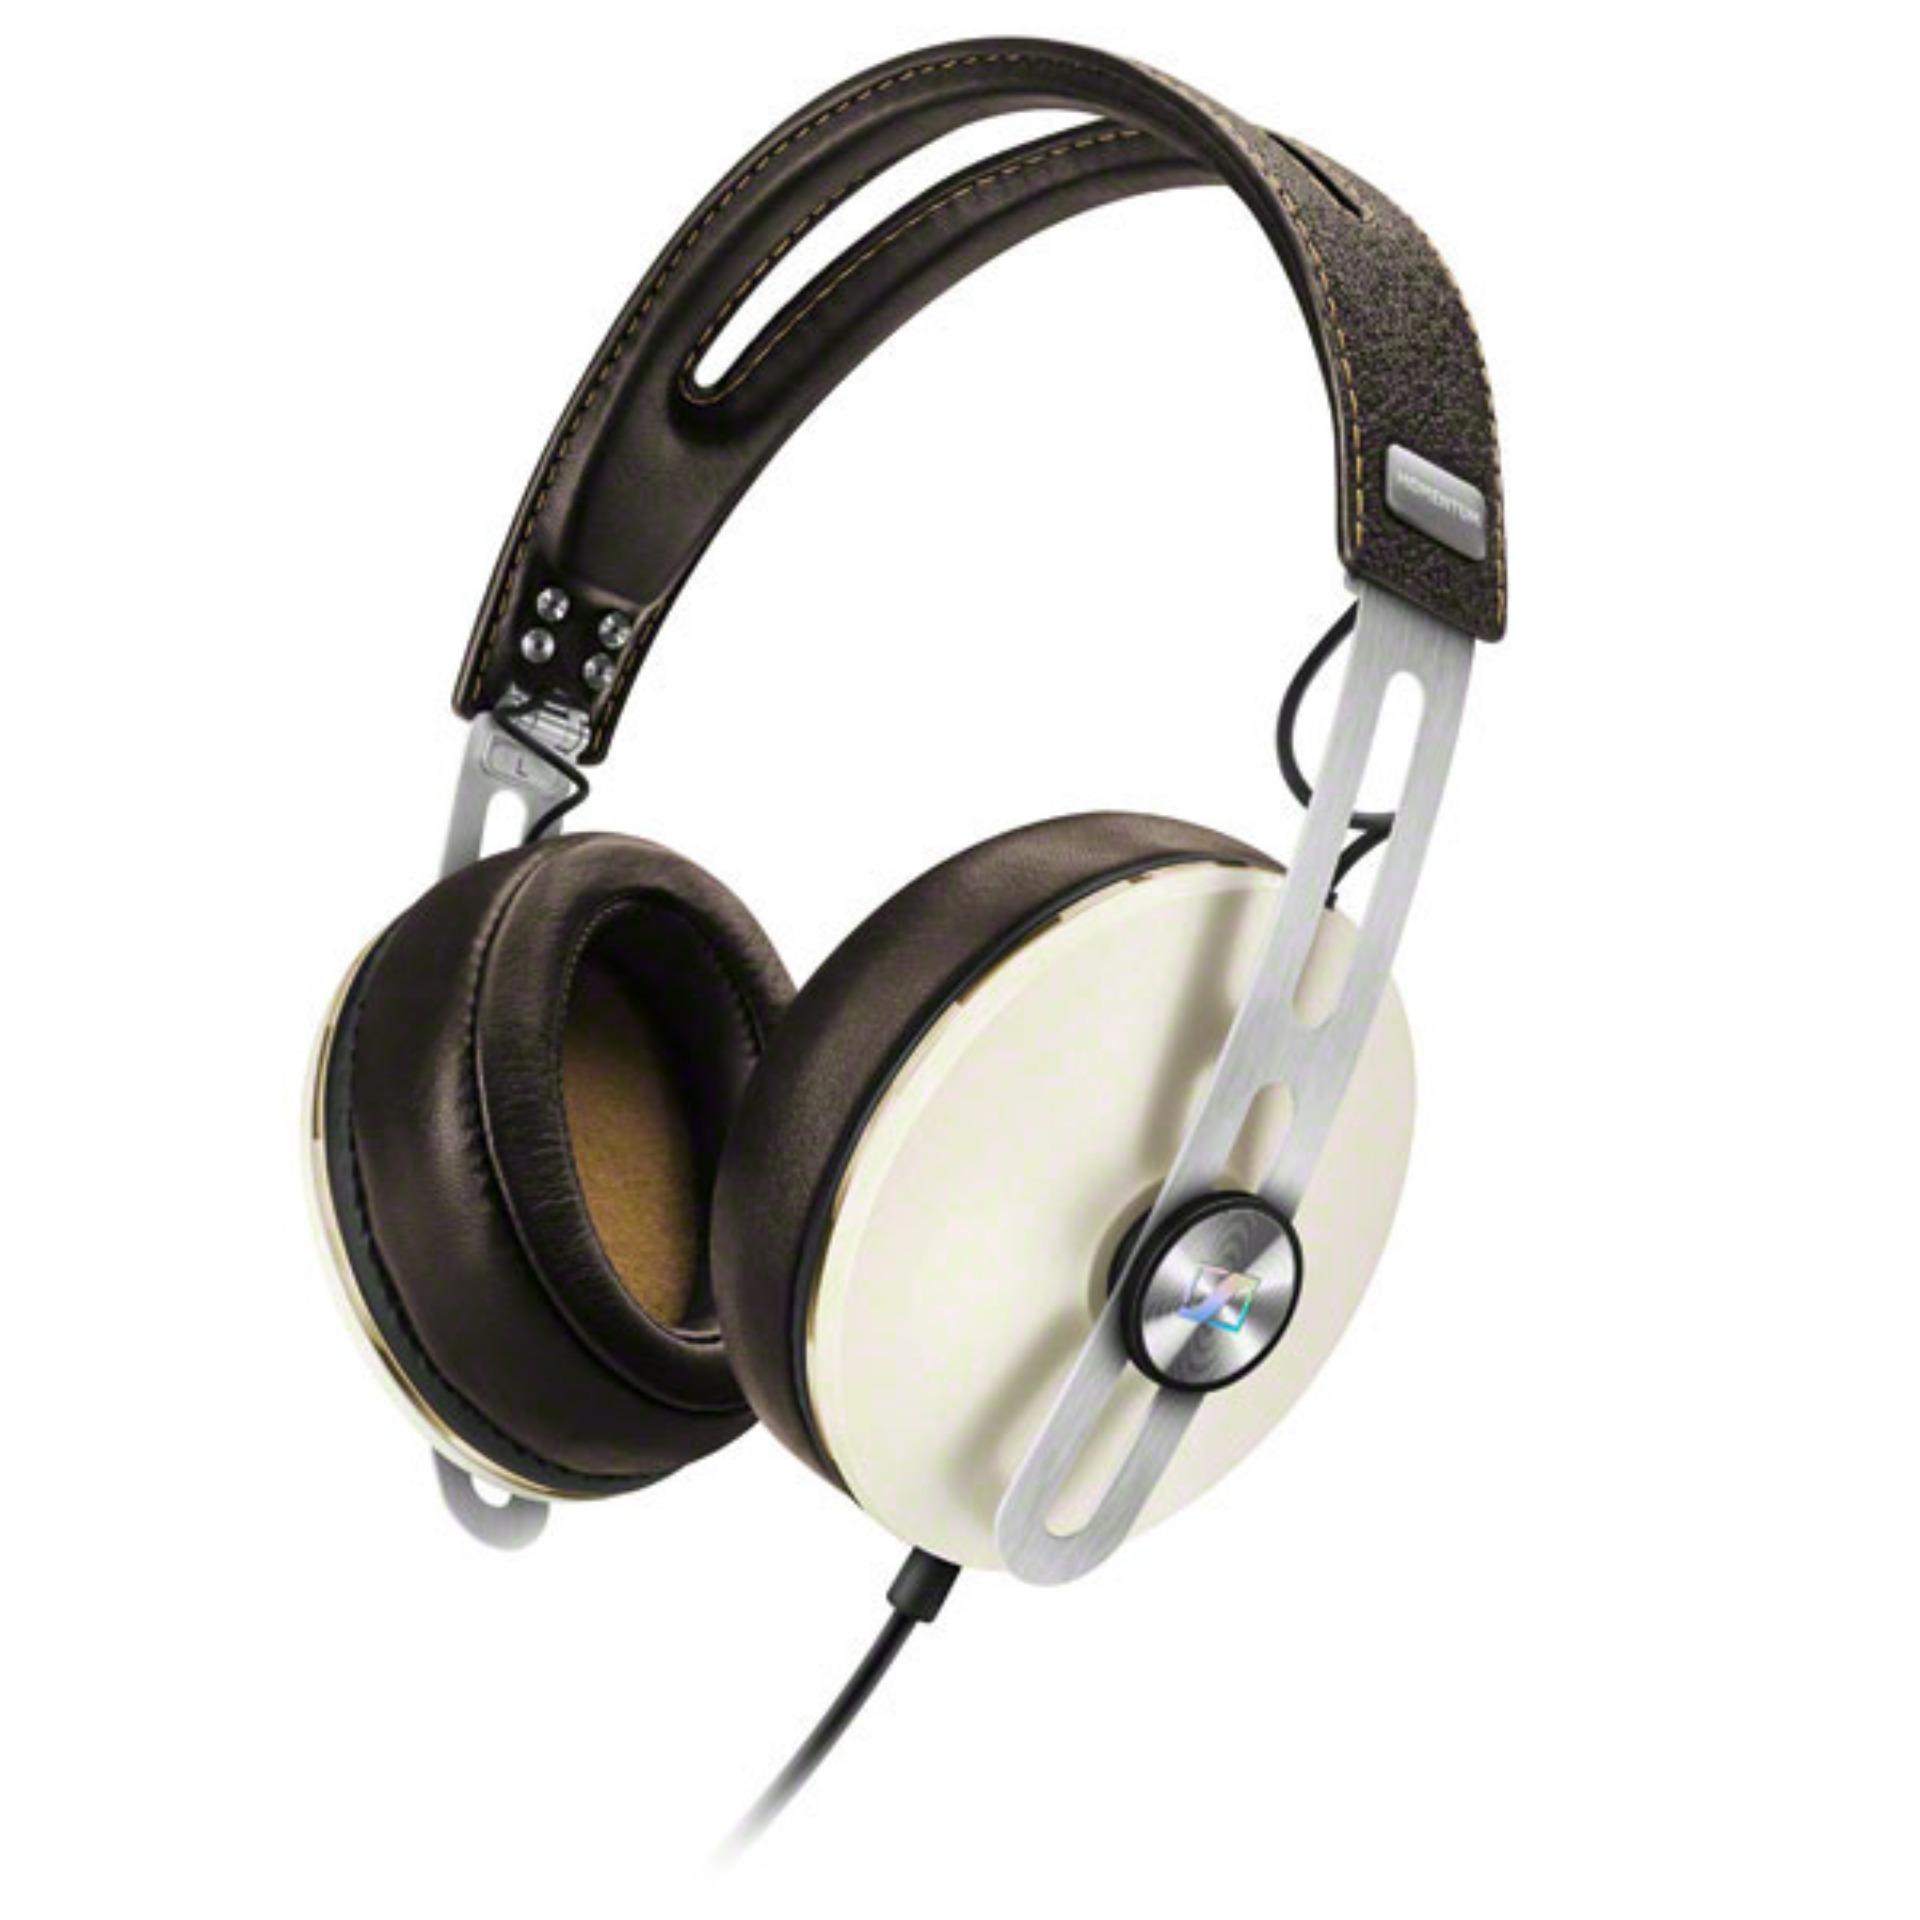 Sennheiser Over ear Stereo Headphones MOMENTUM 2 G (Android) - Ivory